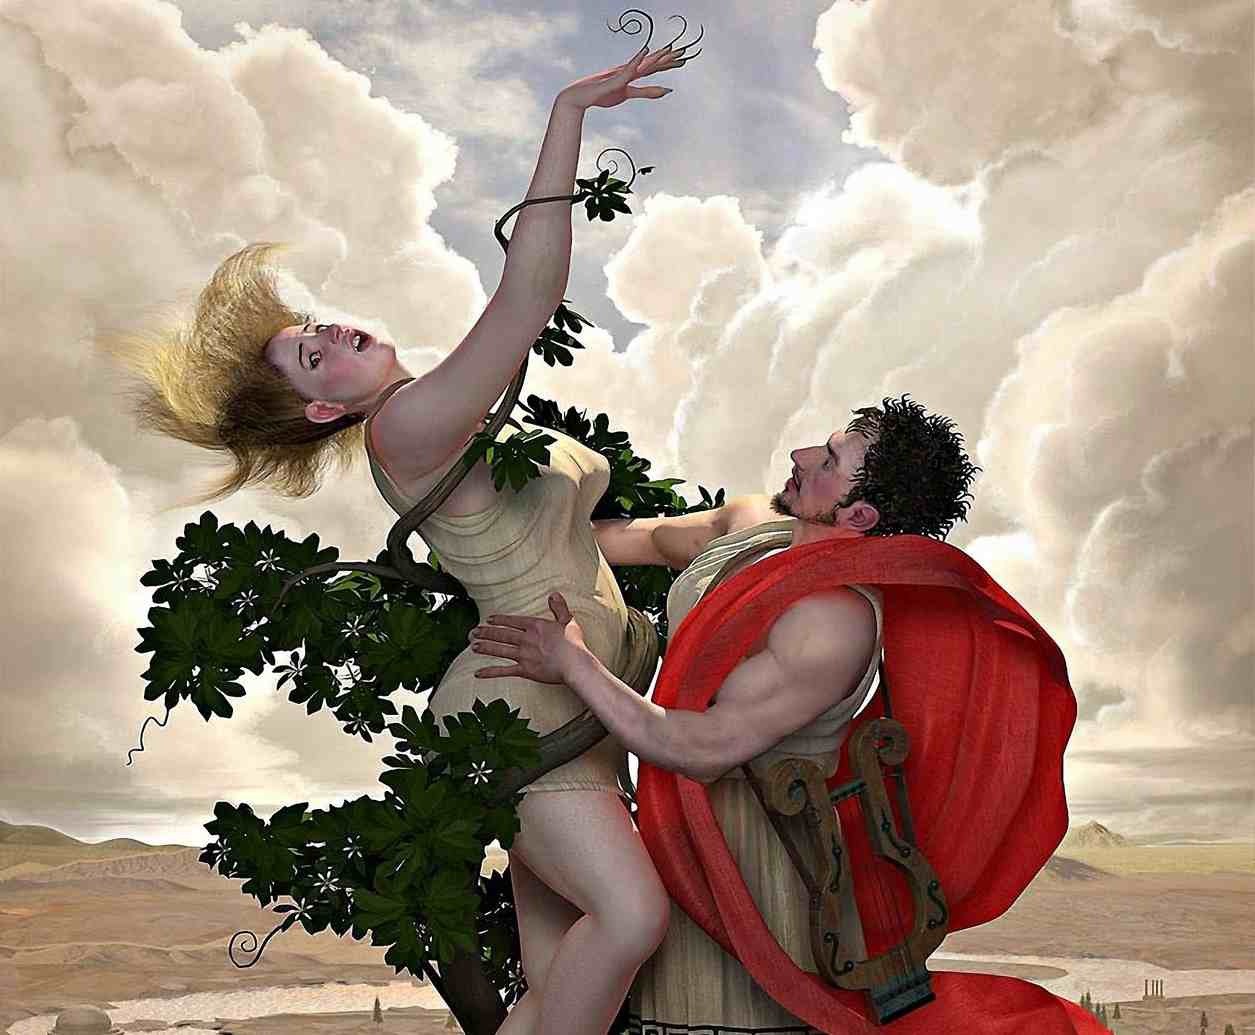 Mitos e Lendas: Apolo Amava Dafne, Mas ela Não o Amava